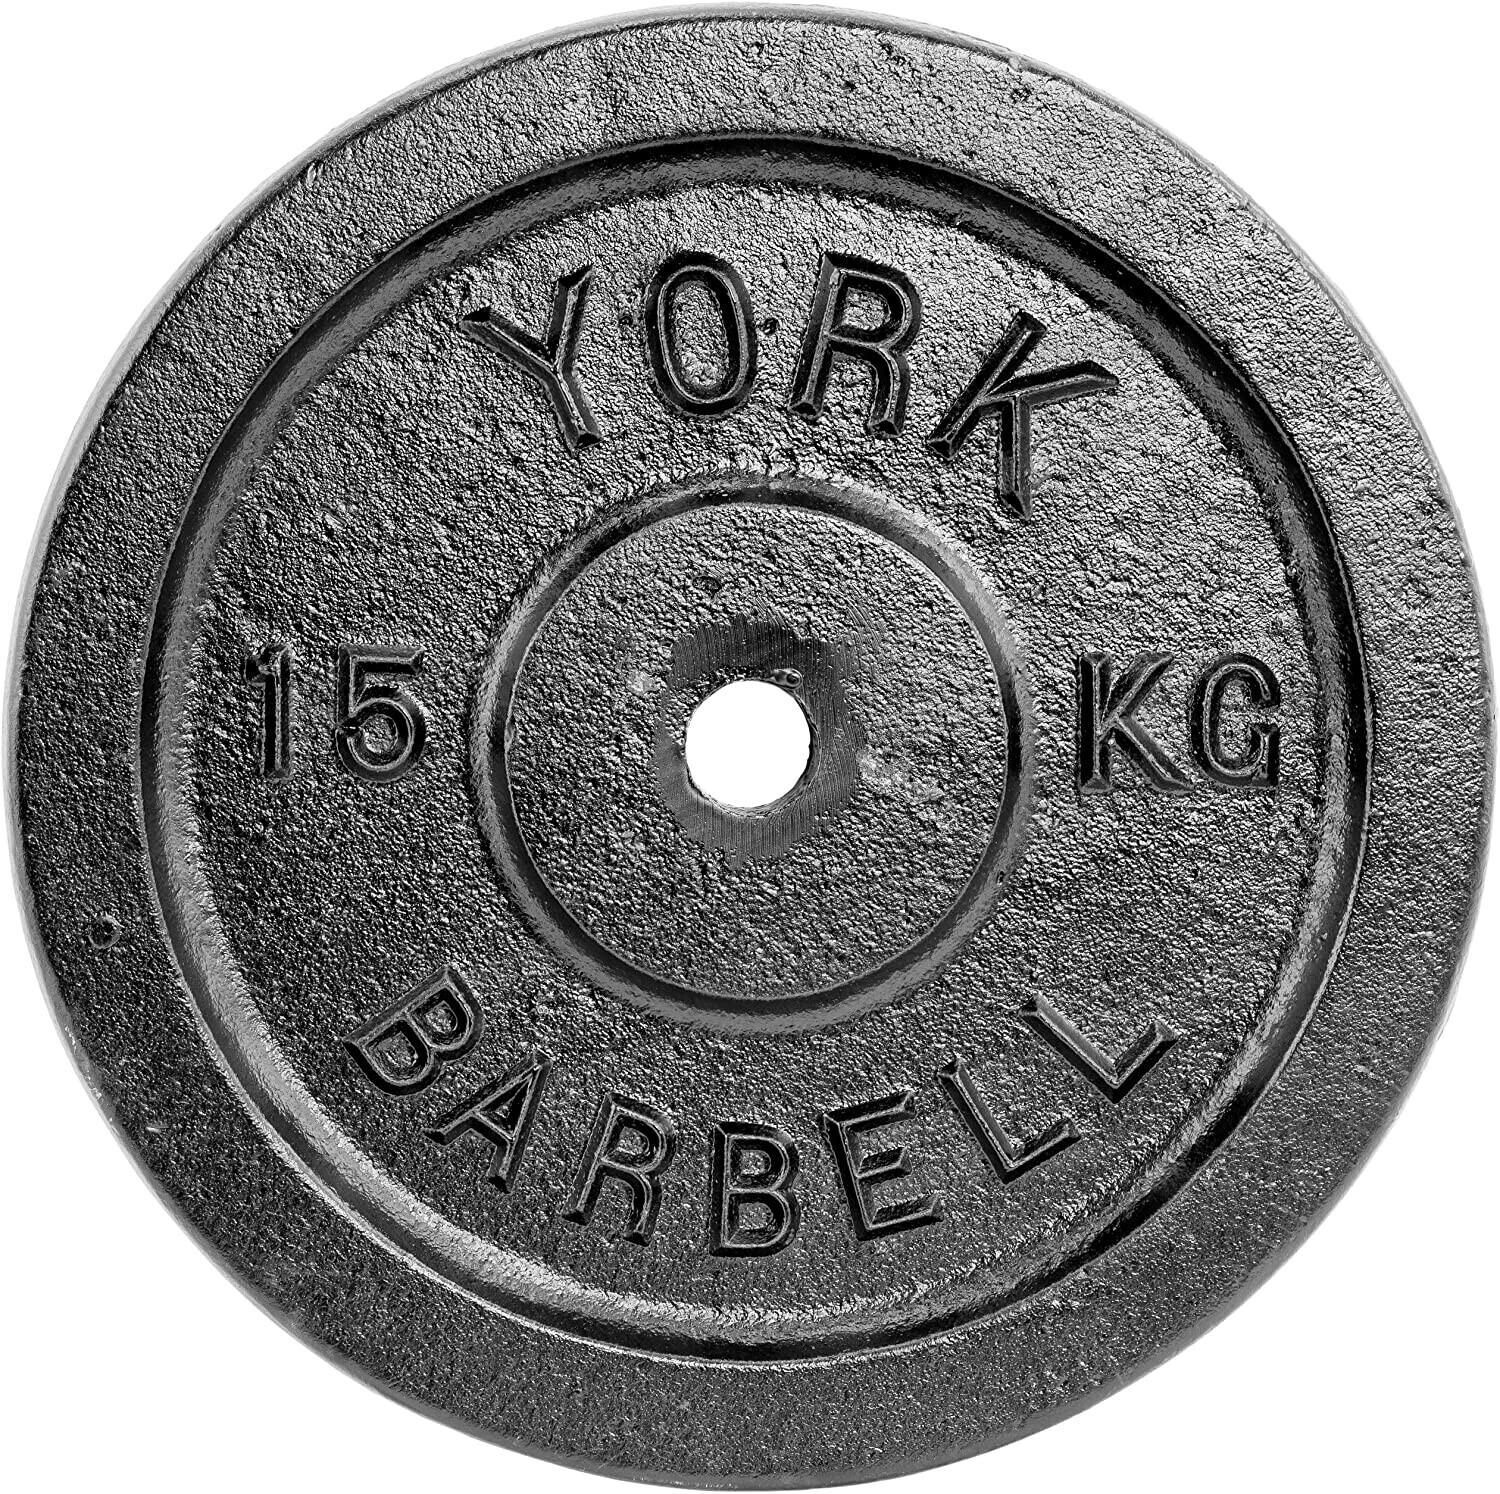 Photos - Barbells & Dumbbells York Fitness York Dumbbell Weight 15.0 kg